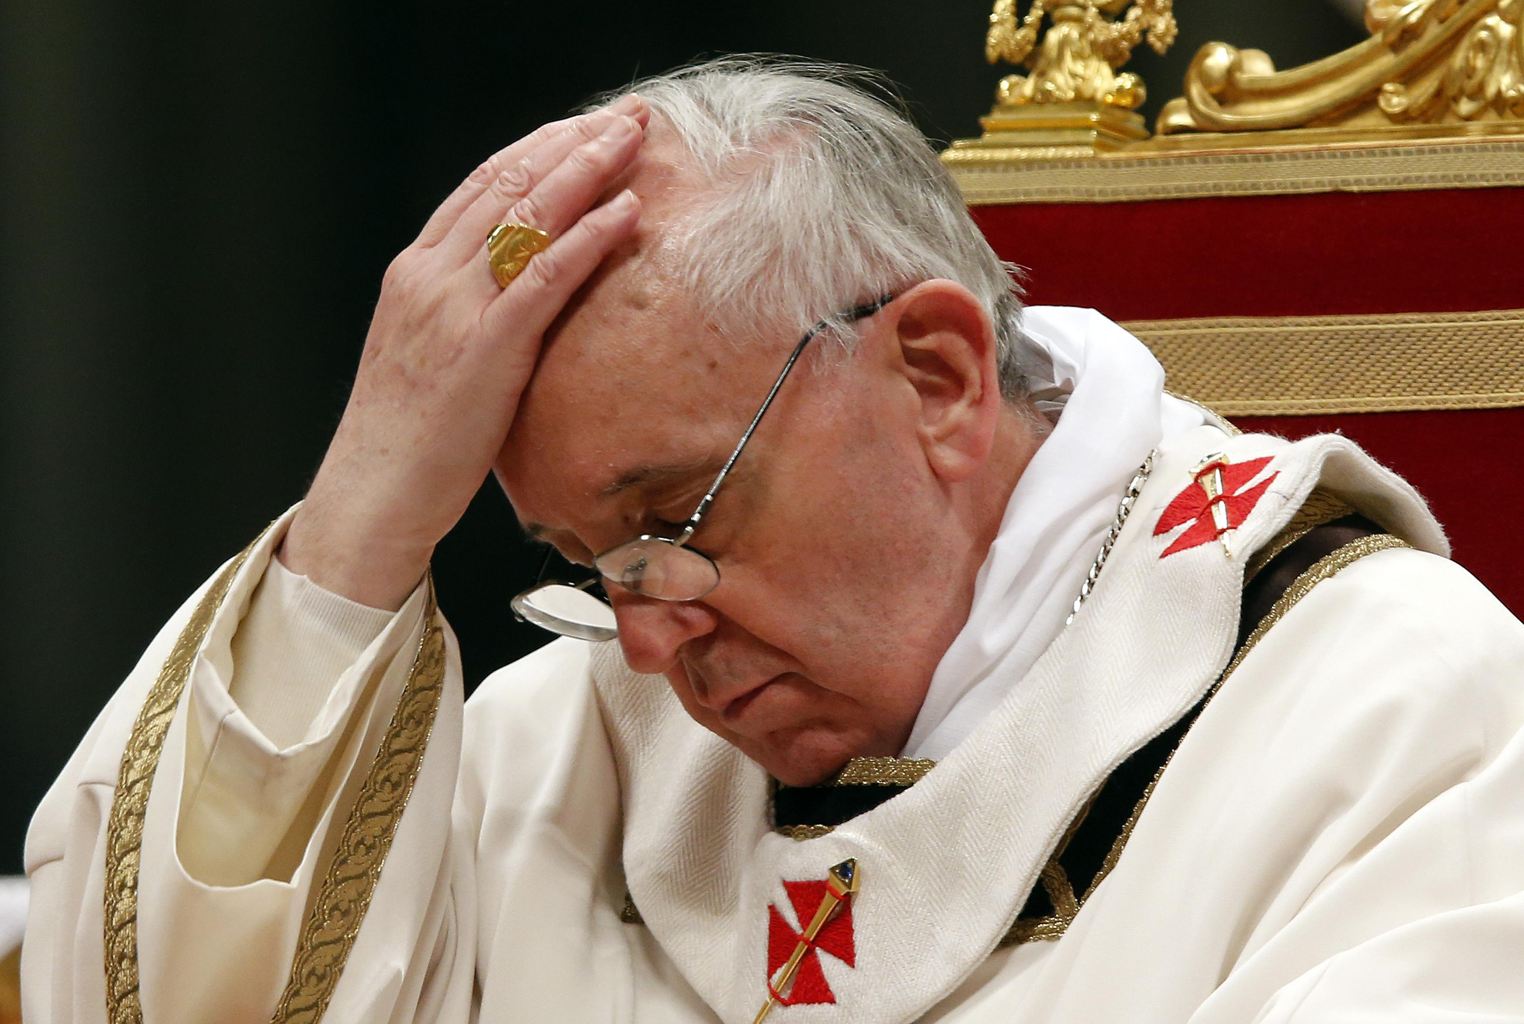 El viaje del Papa a Tierra Santa plantea grandes riesgos en materia de seguridad